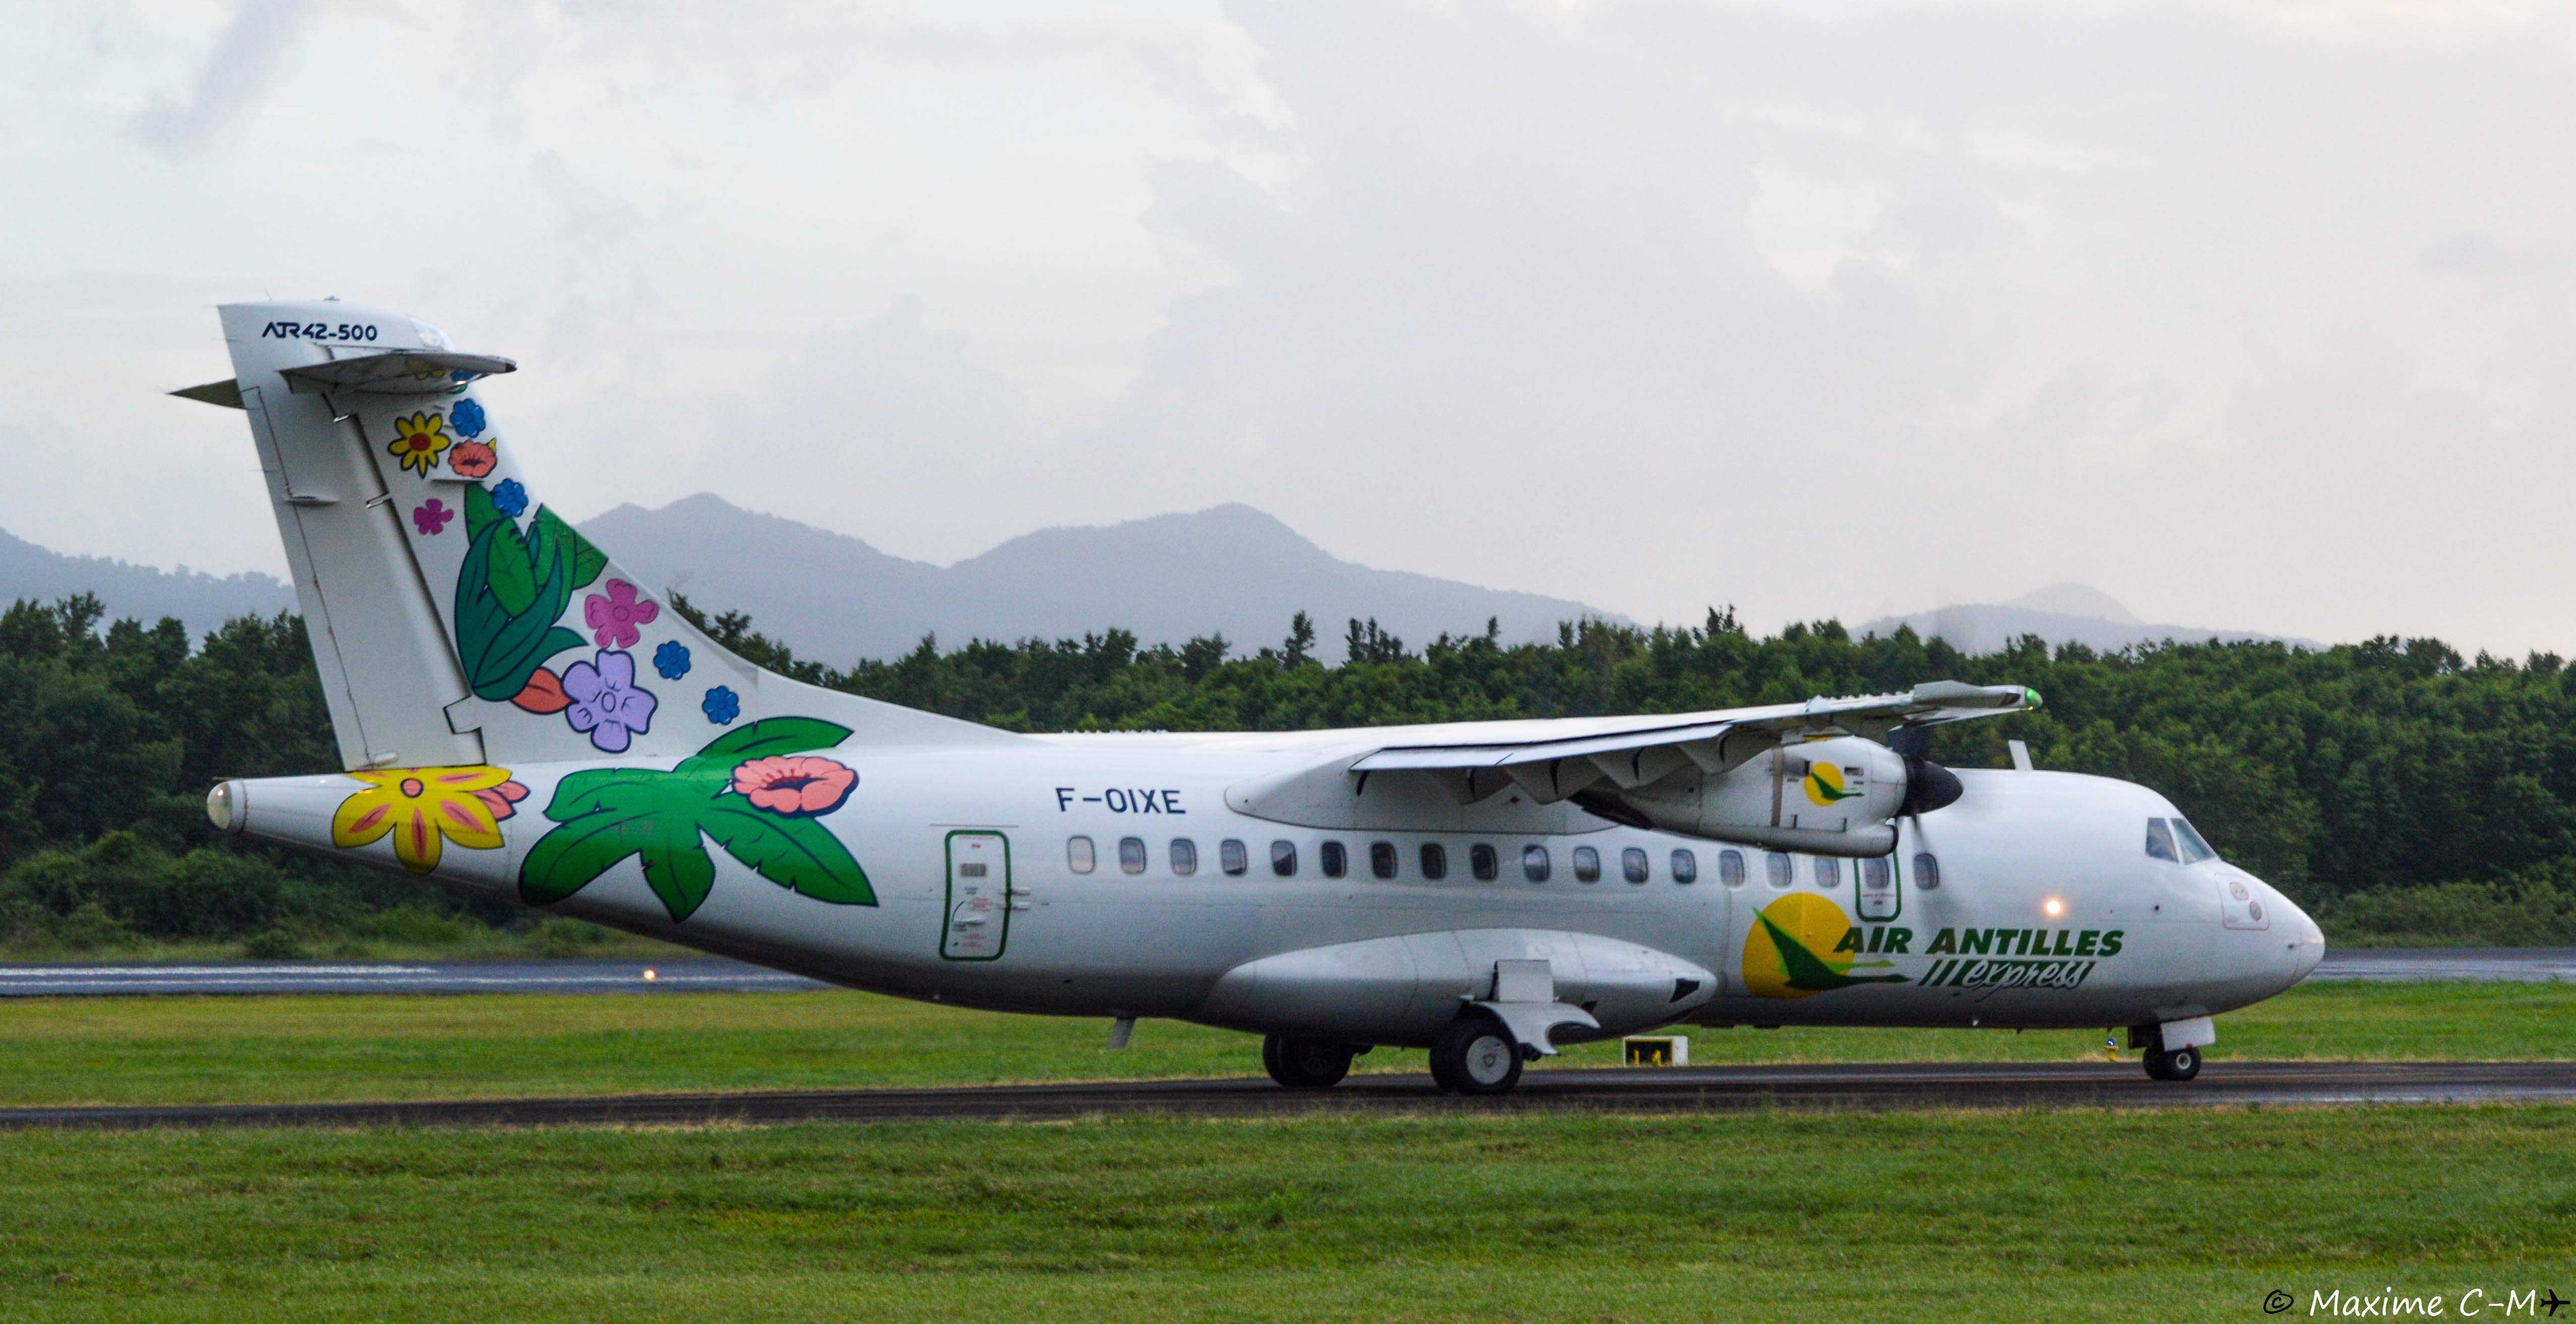 Le tribunal de commerce autorise la reprise d'Air Antilles mais pas d'Air Guyane